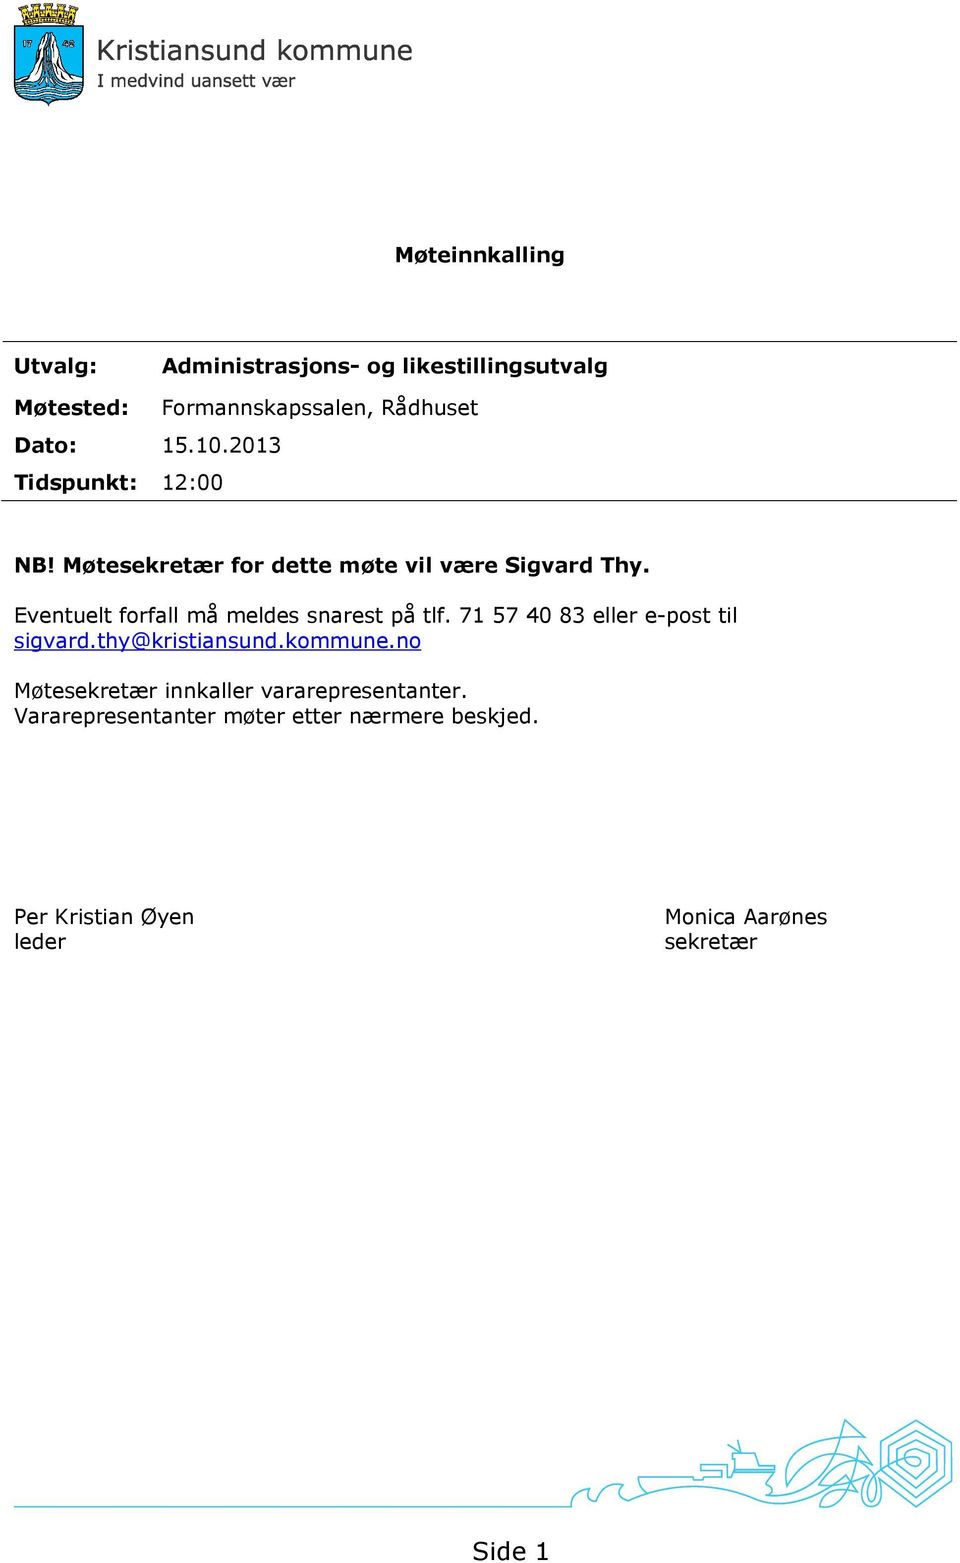 Eventuelt forfall må meldes snarest på tlf. 71 57 40 83 eller e-post til sigvard.thy@kristiansund.kommune.